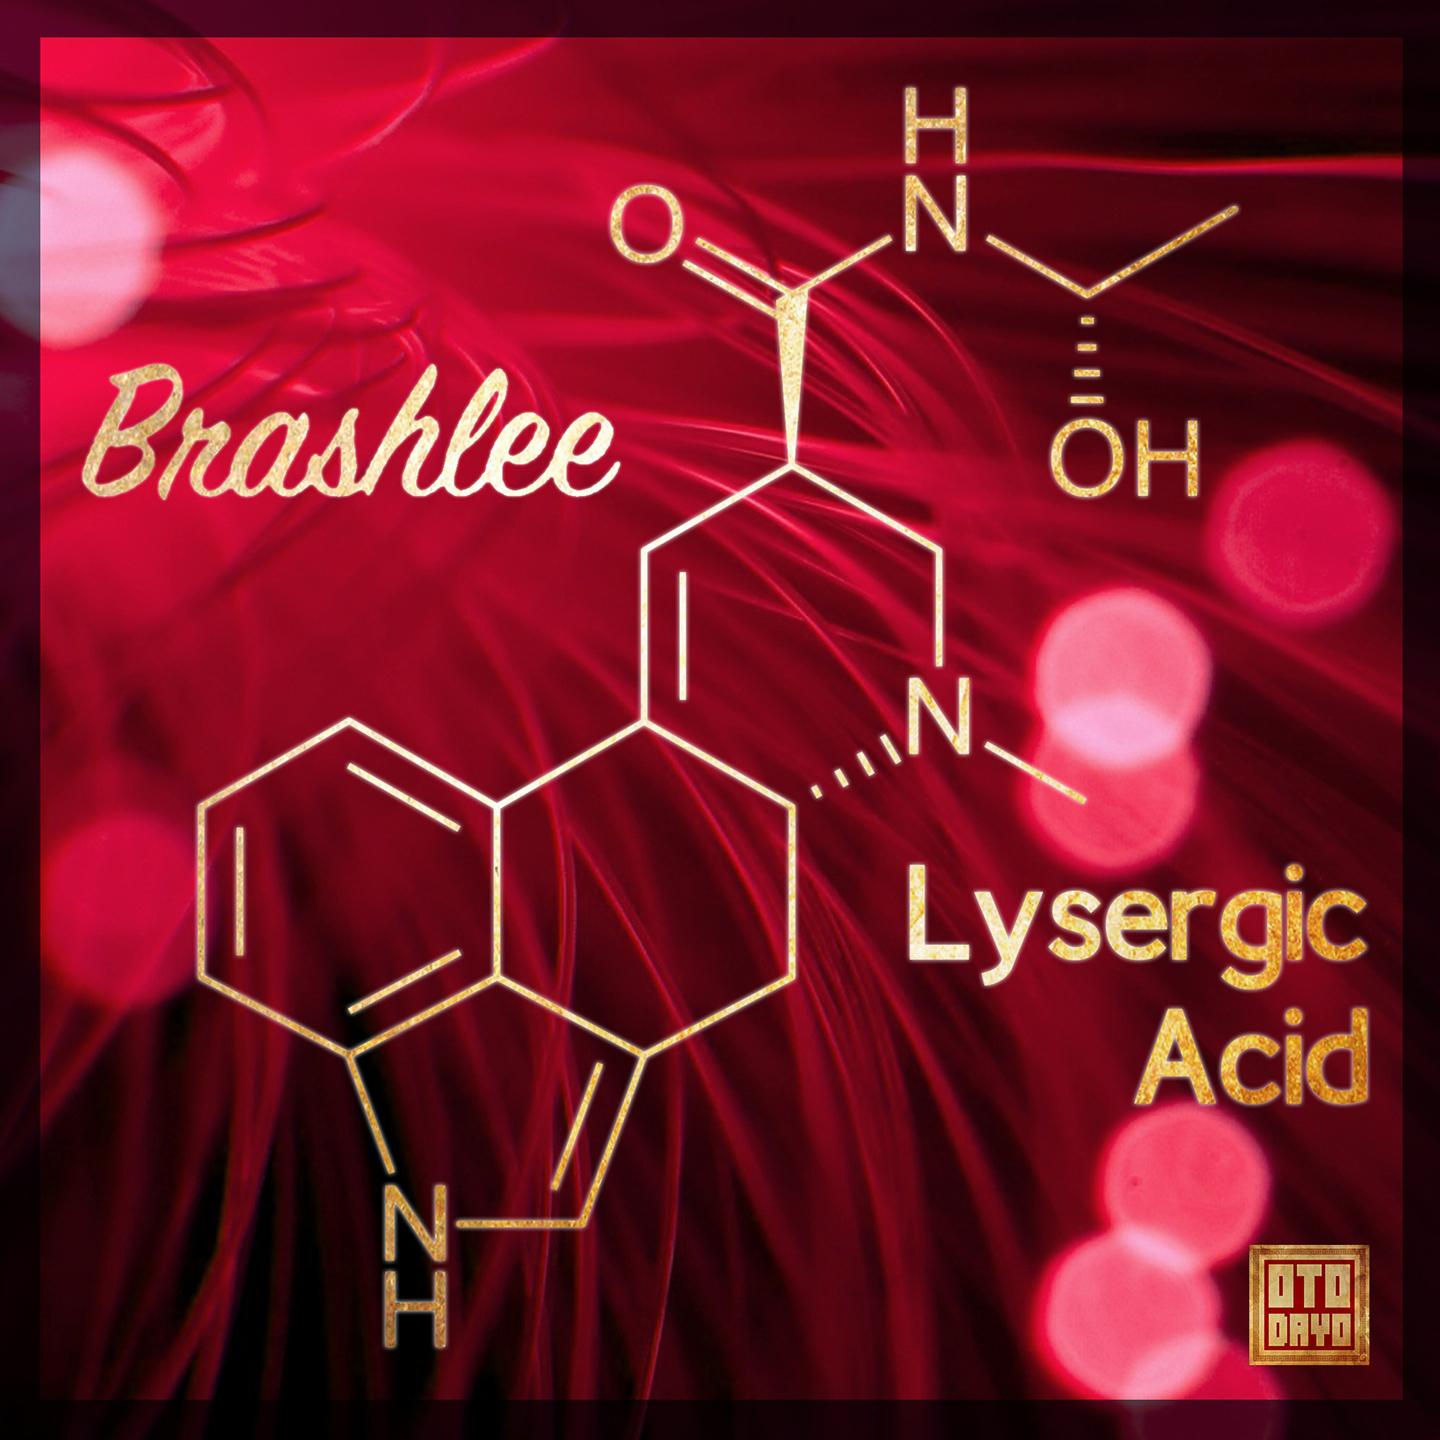 Brashlee - Lysergic Acid